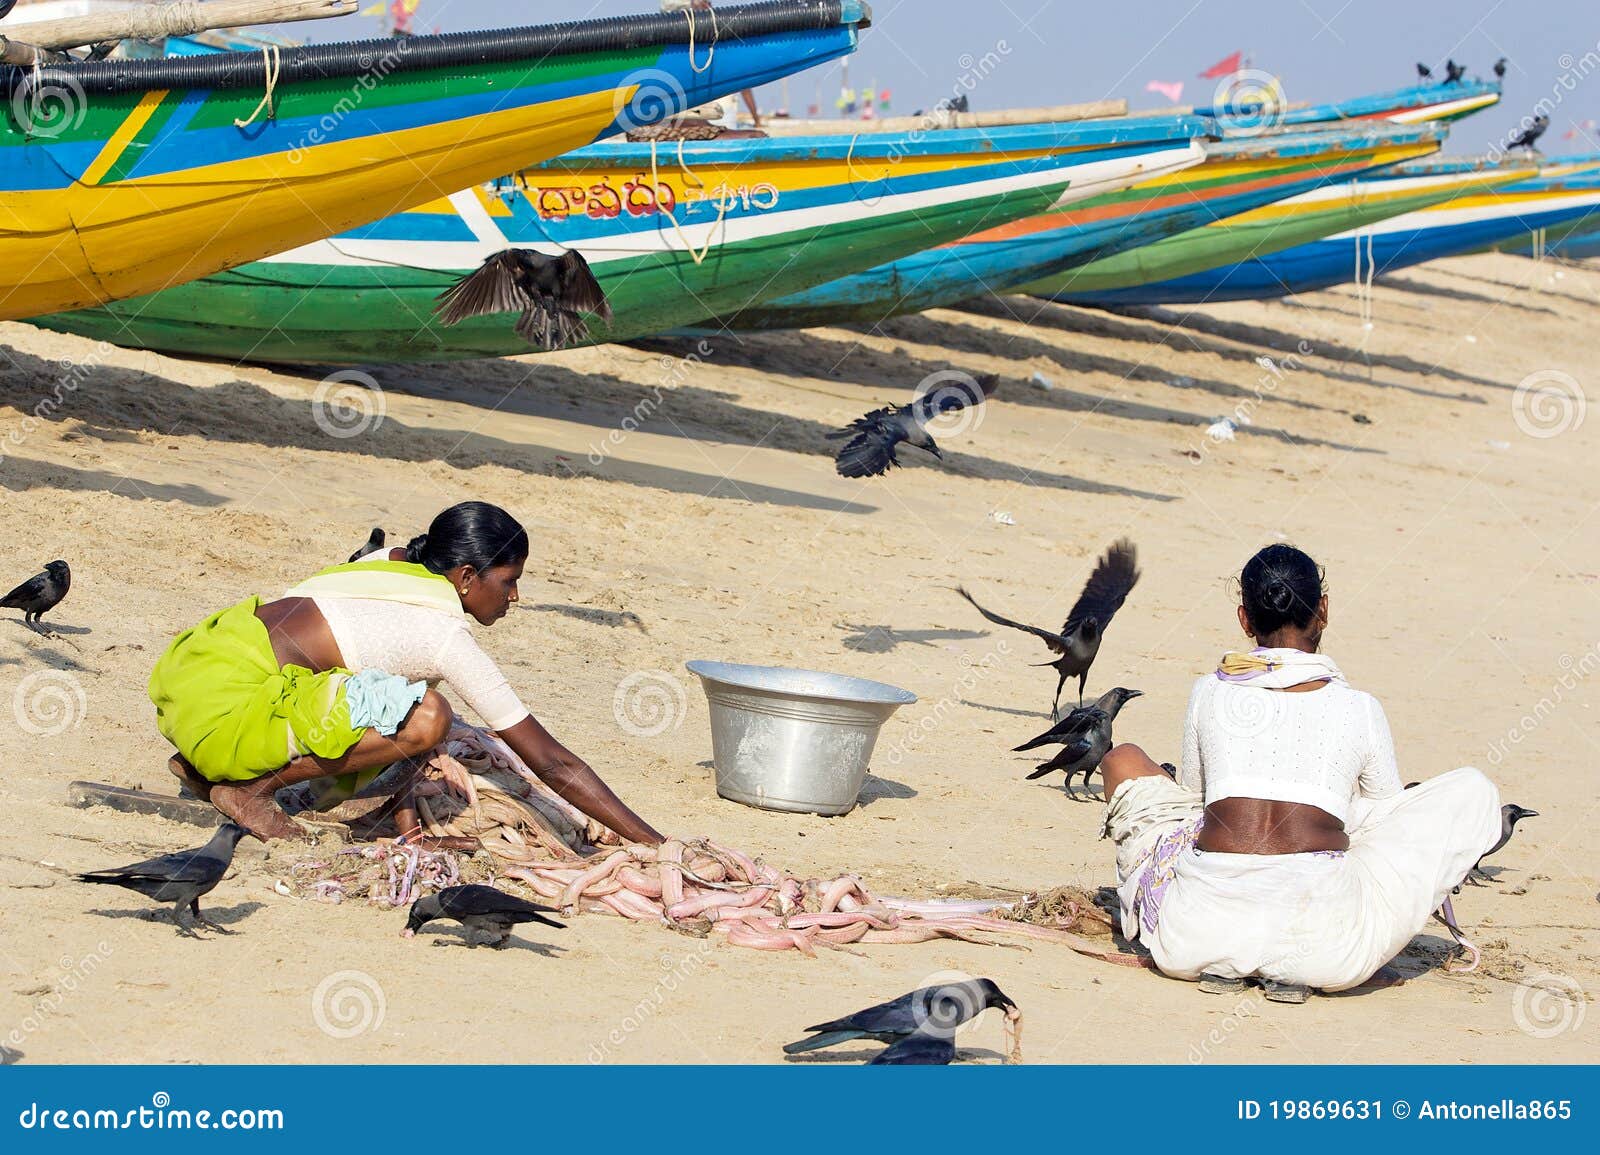 Pêcheur indien avec les poissons. L'Inde, golfe de Bengala : les femmes sur la plage travaillent les poissons. Le potentiel grand existe pour augmenter l'industrie de la pêche de la nation. La zone exclusive de l'Inde, étirant 200 milles marins (370 kilomètres) dans l'Océan Indien, entoure plus de 2 millions de kilomètres carrés. Au milieu des années 80, seulement environ 33 pour cent de cette zone étaient exploités. Le loquet annuel potentiel de la zone a été estimé 4.5 à millions de tonnes. La production indienne de poissons a augmenté plus que de cinq fois depuis l'indépendance de l'Inde.